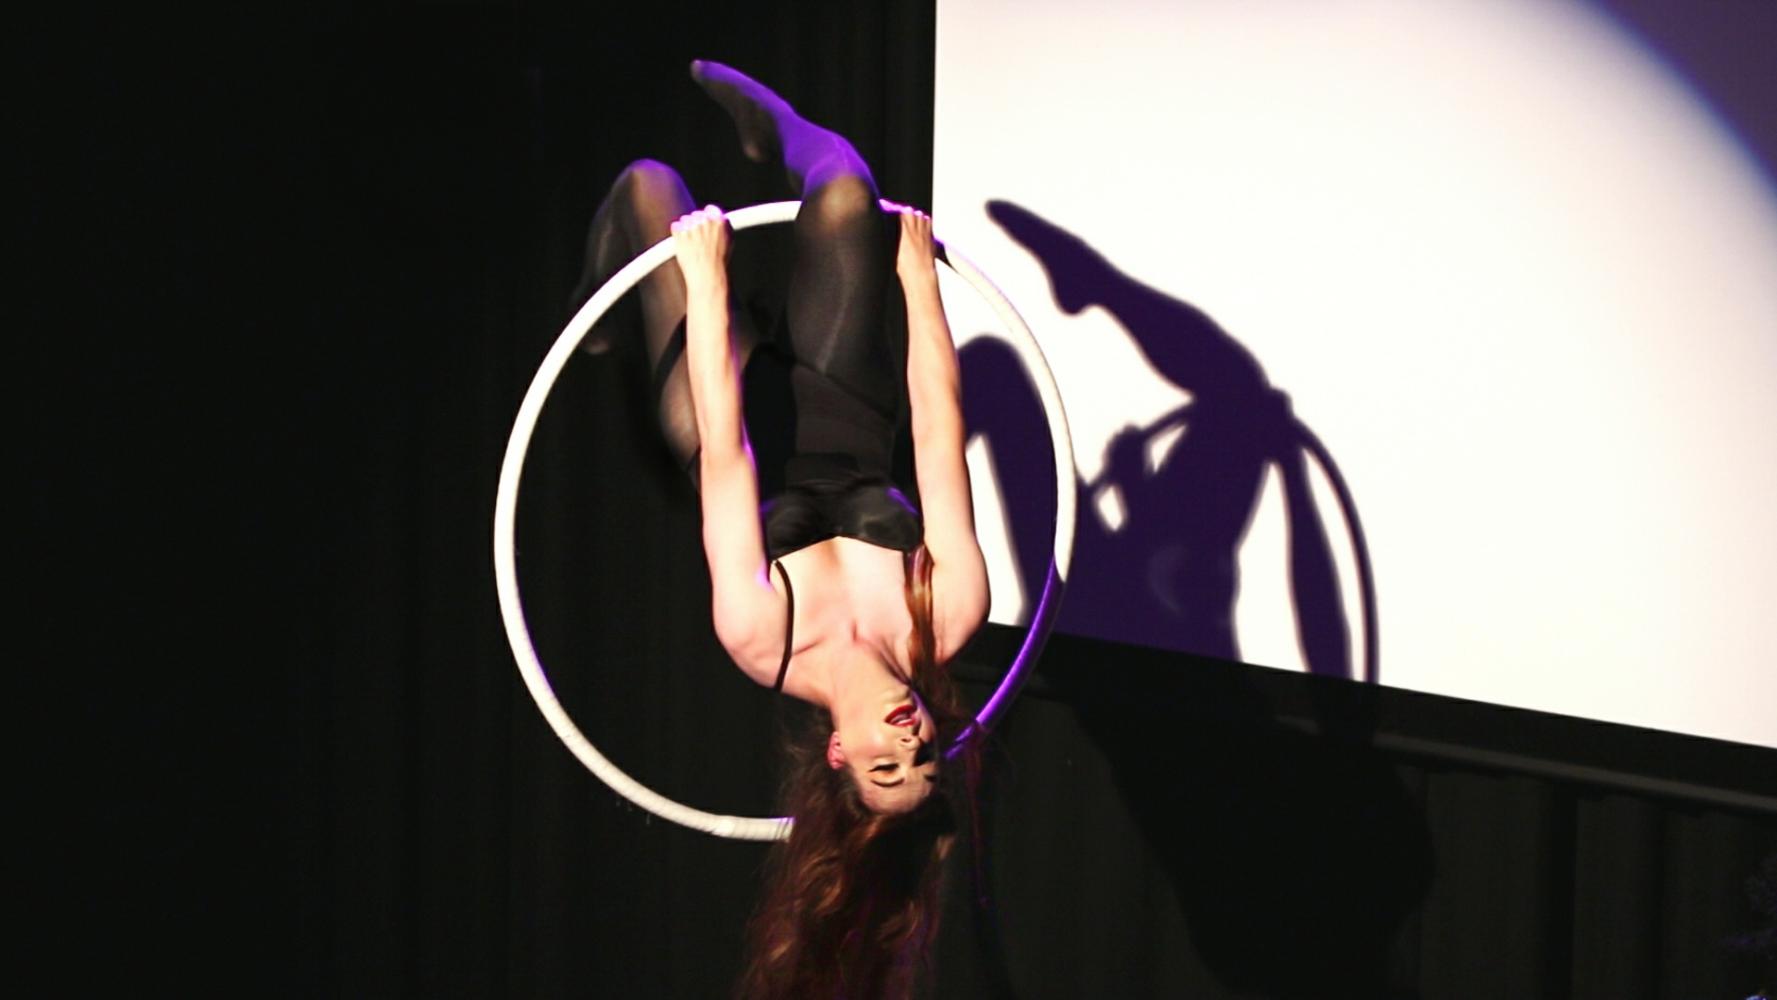 A woman in shiny black leotard & tights hangs upside down from her knee in an aerial hoop; her long red/brown hair hangs down